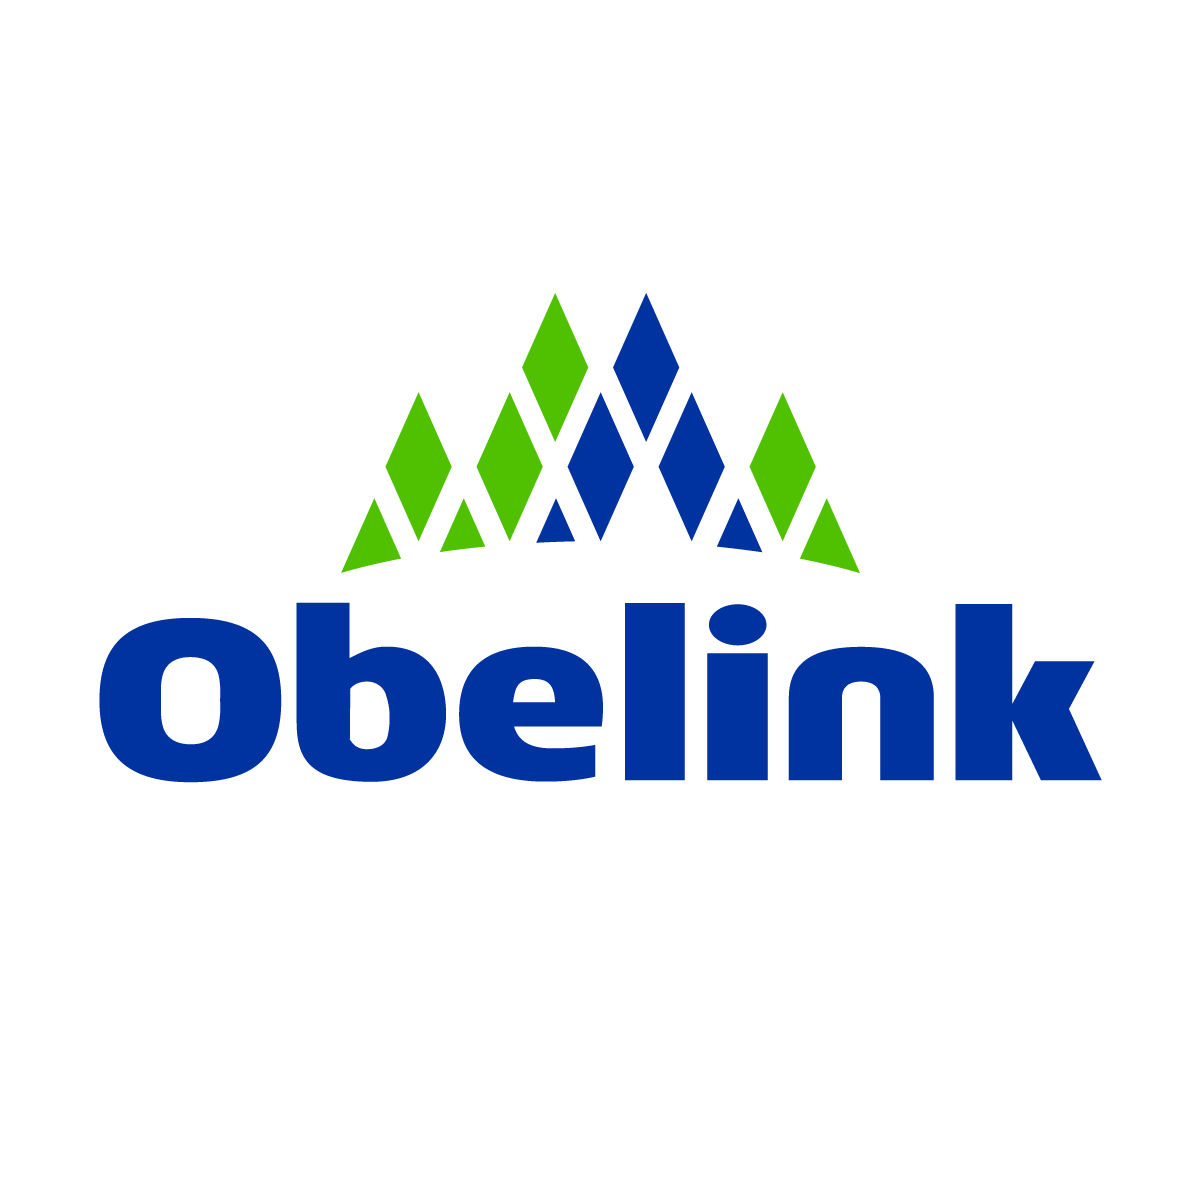 Obelink Logo - Blauw